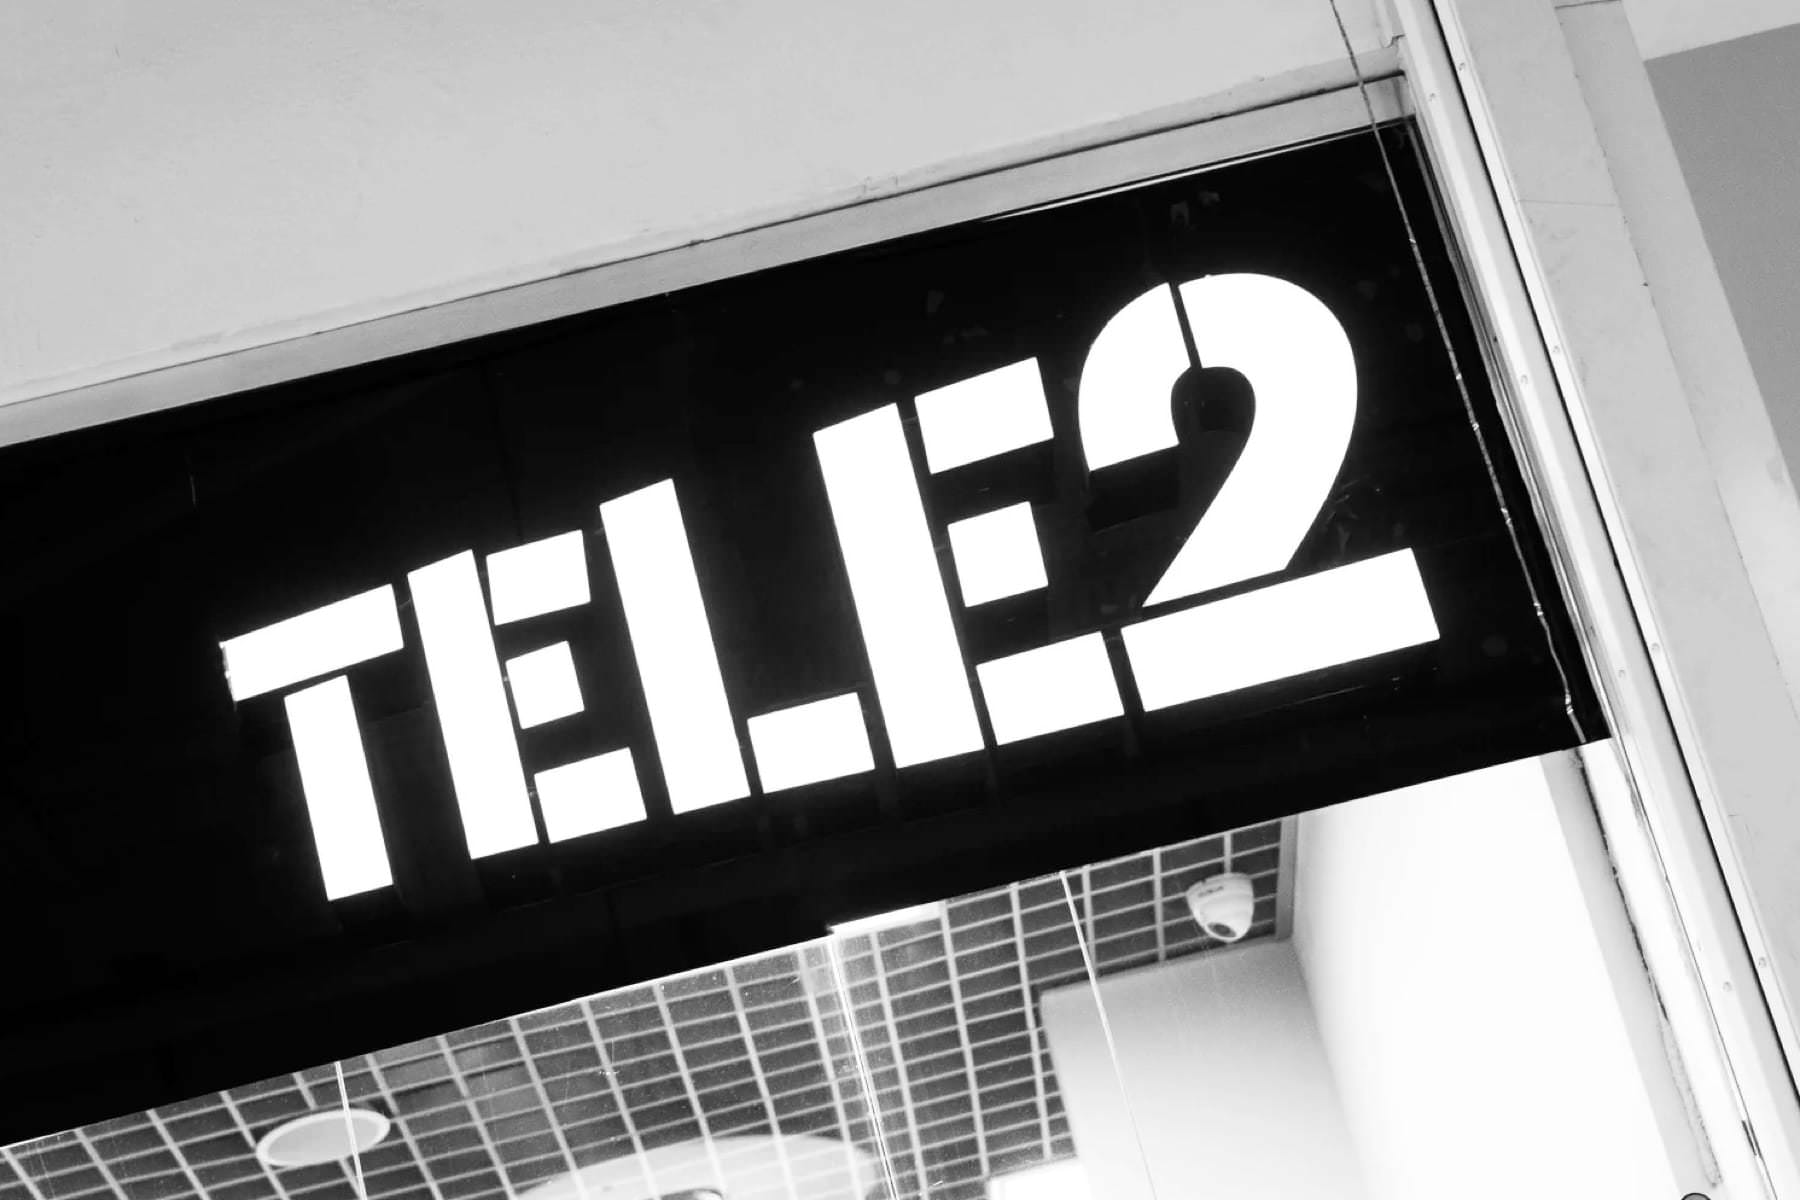 ФАС потребовала от Tele2 снизить цены на тарифы